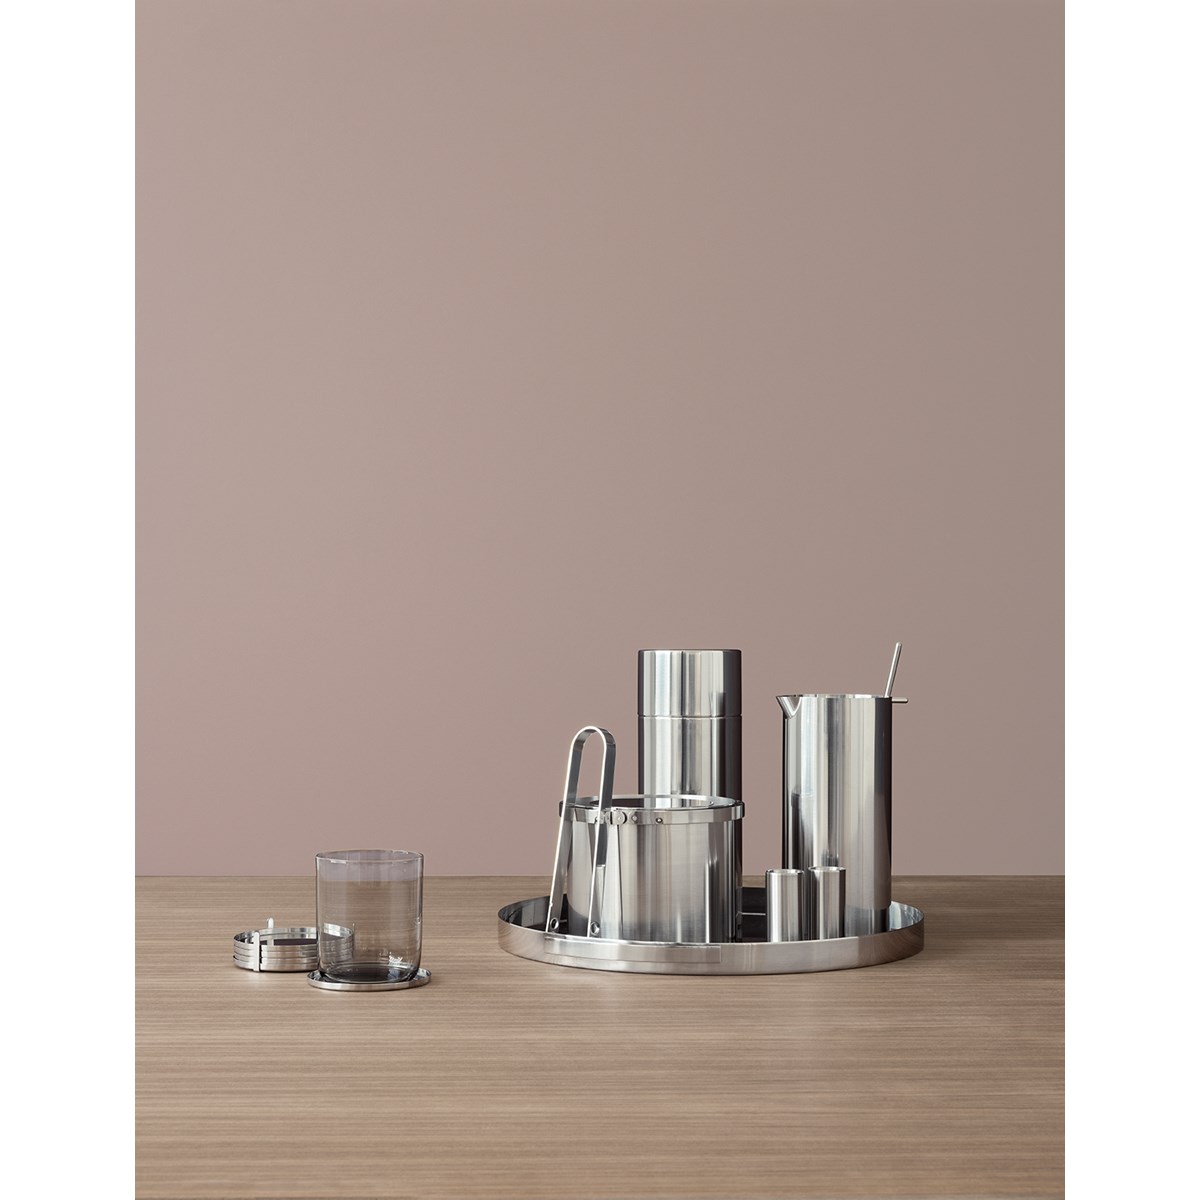 Stelton Arne Jacobsen champagnekjøler stål